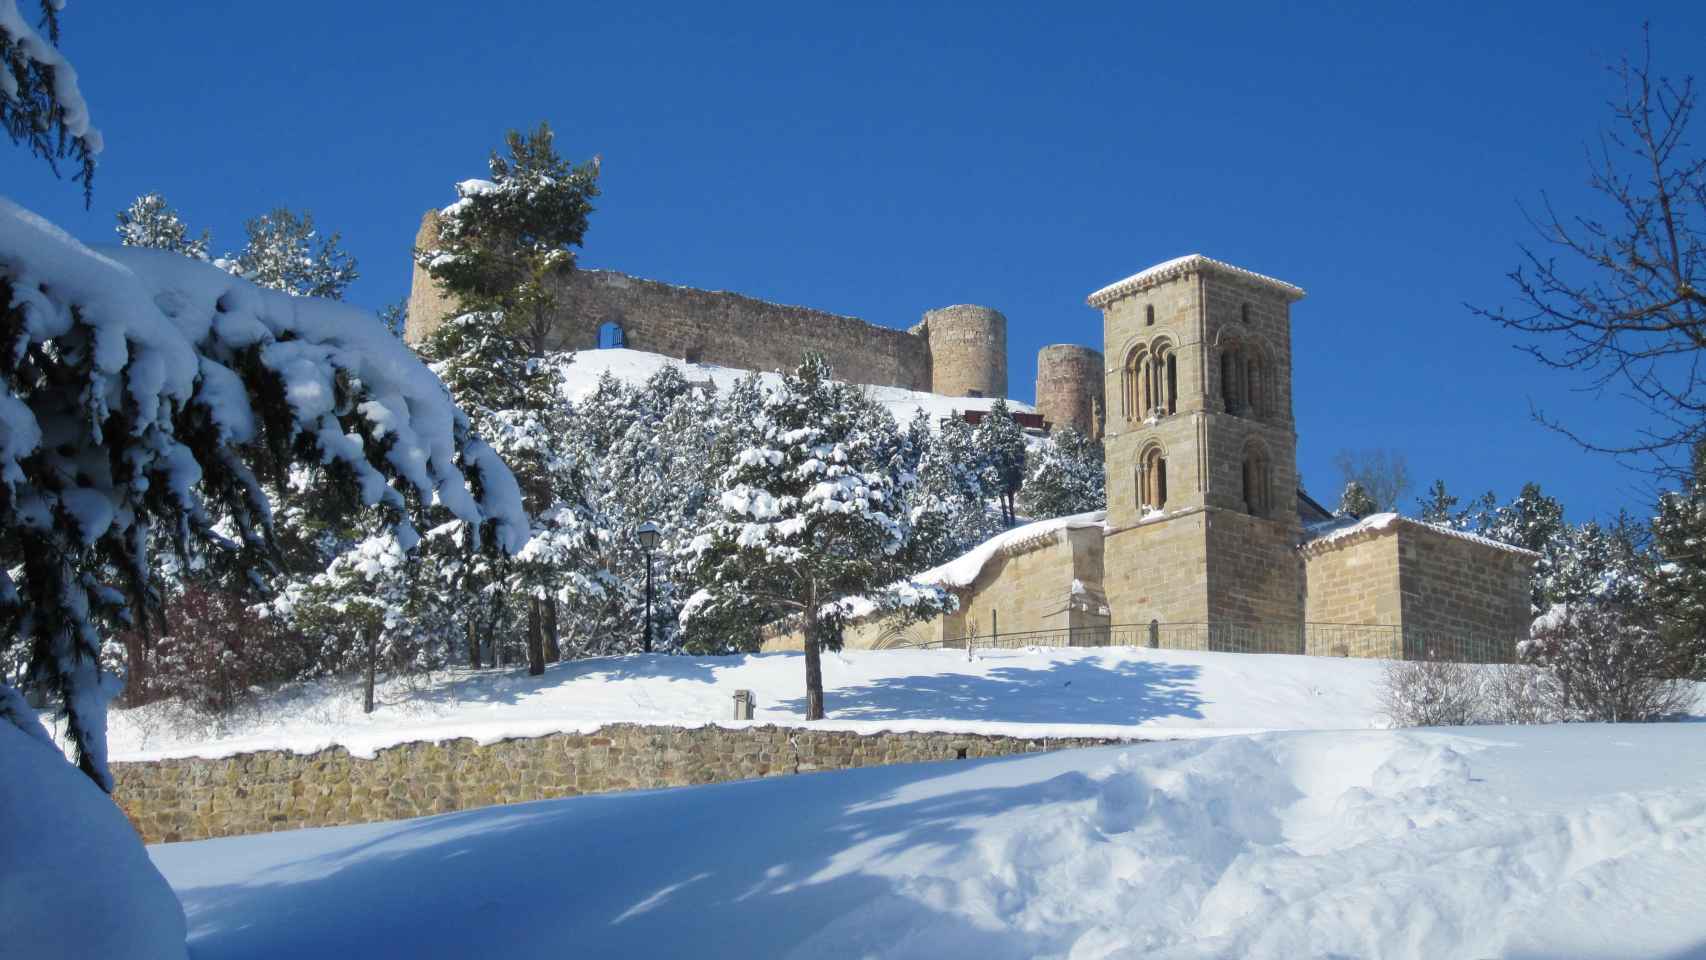 Bella estampa invernal del conjunto que forman la iglesia de Santa Cecilia y el castillo